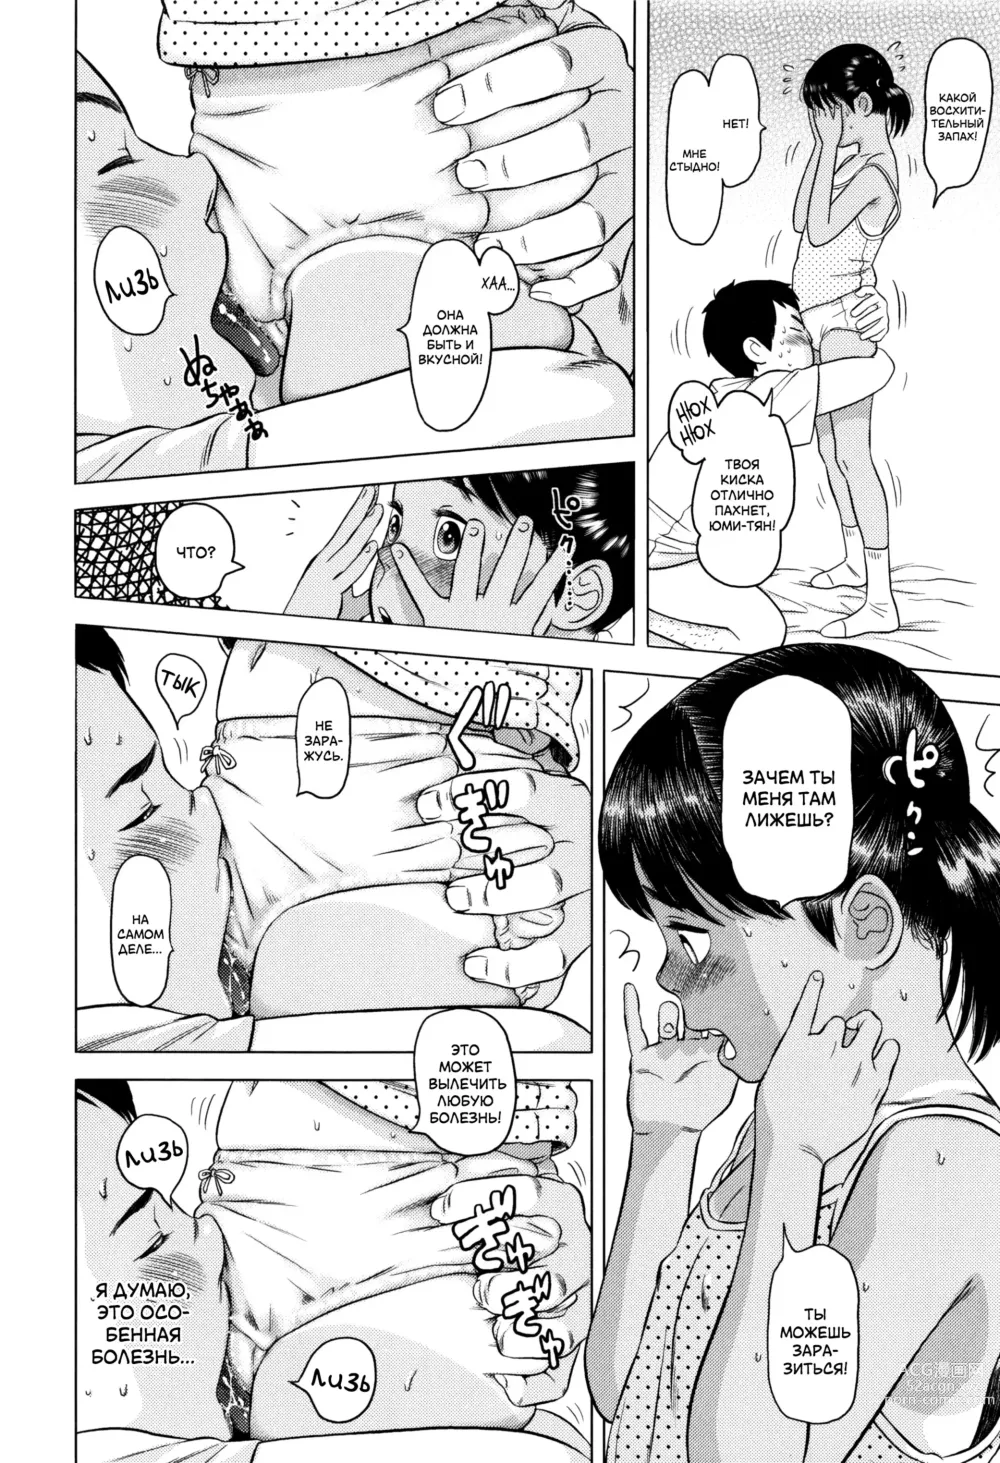 Page 12 of manga Проверка на педофила